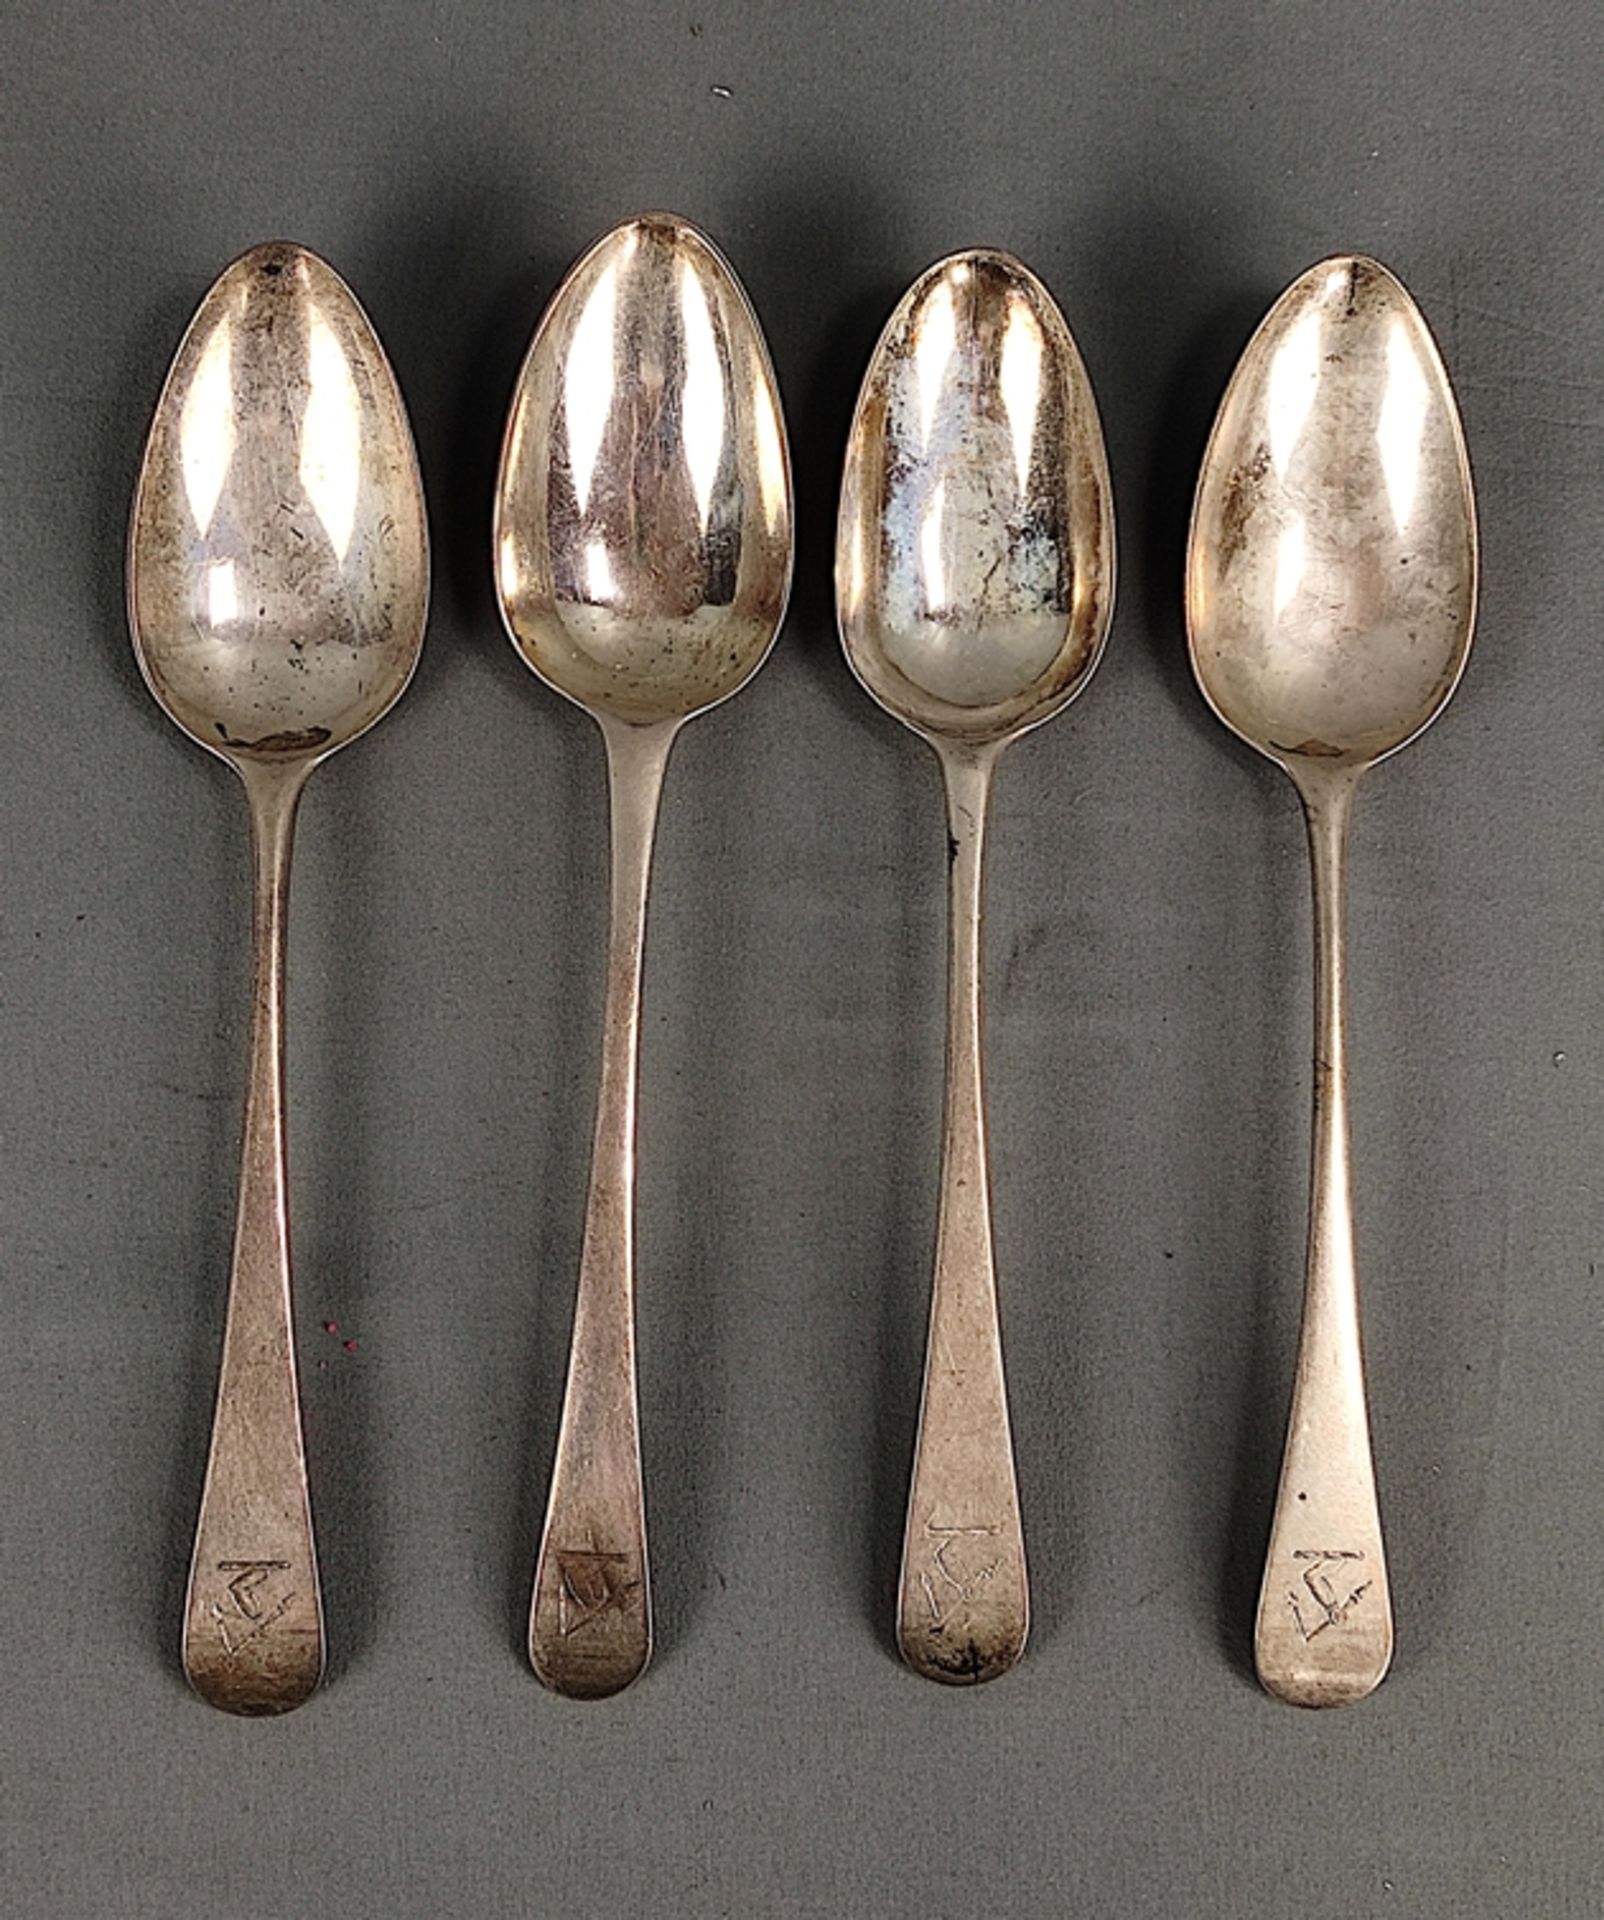 4 Speiselöffel, England, London, 1782, 1787, 1788, verschiedene Silberschmiede, auf Stiel ziseliert